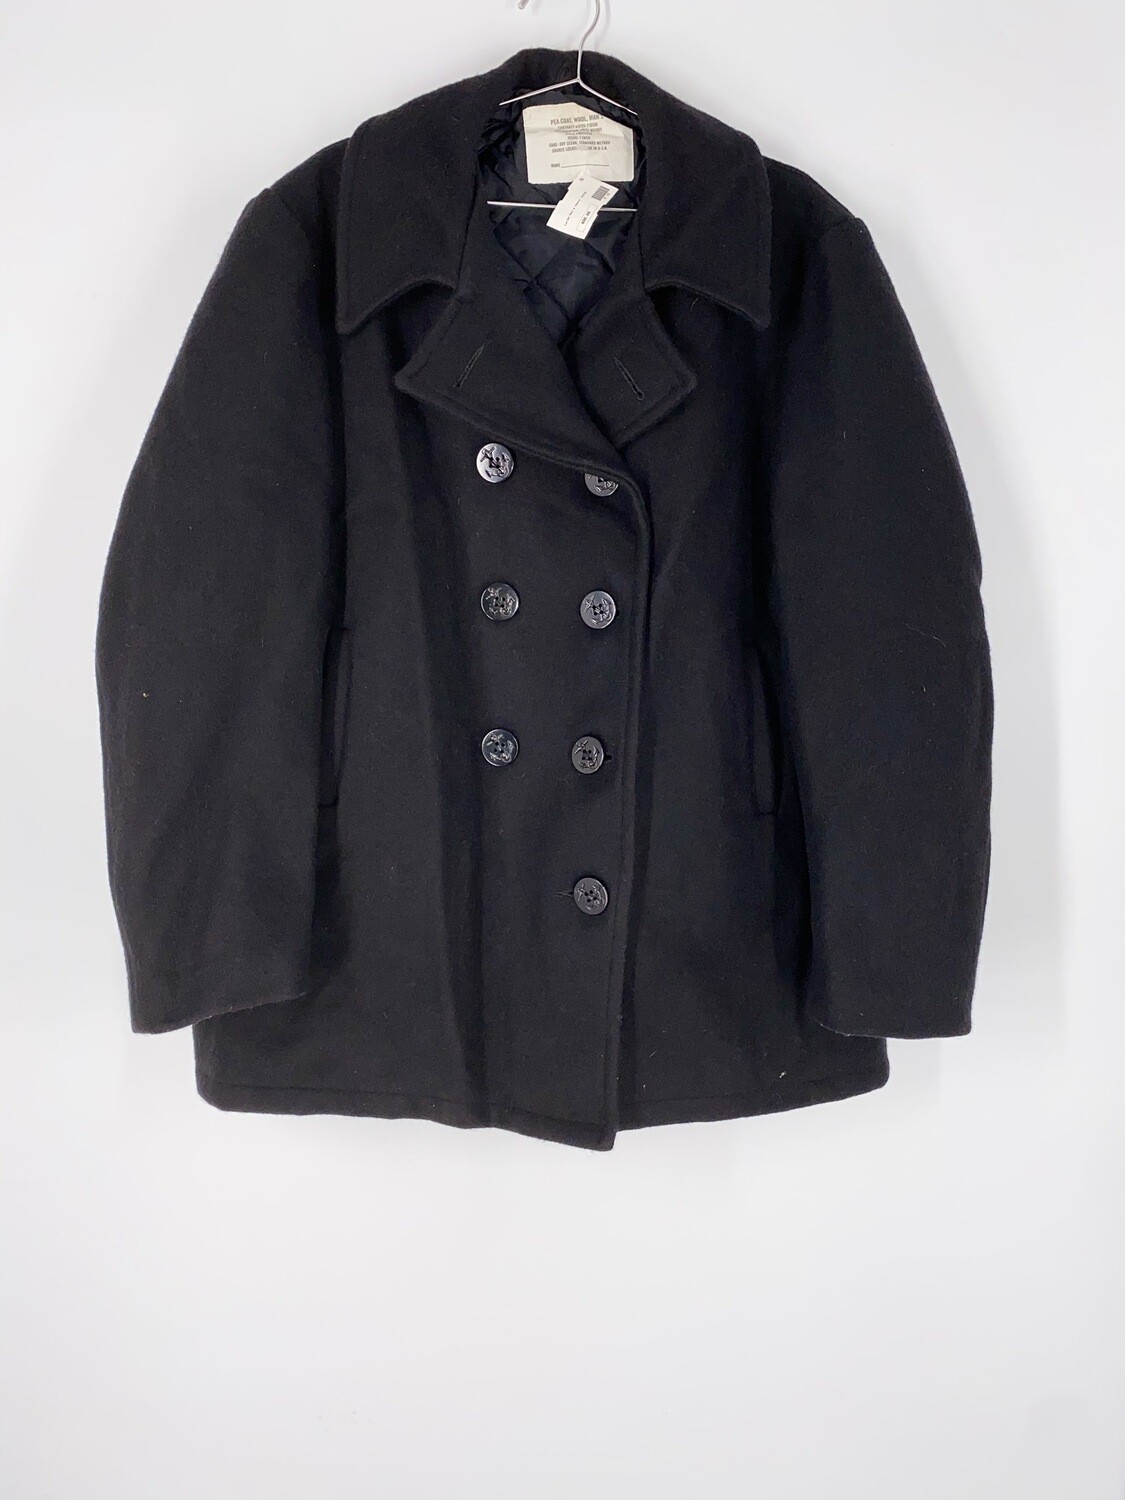 Black Wool Heavy Jacket Size L